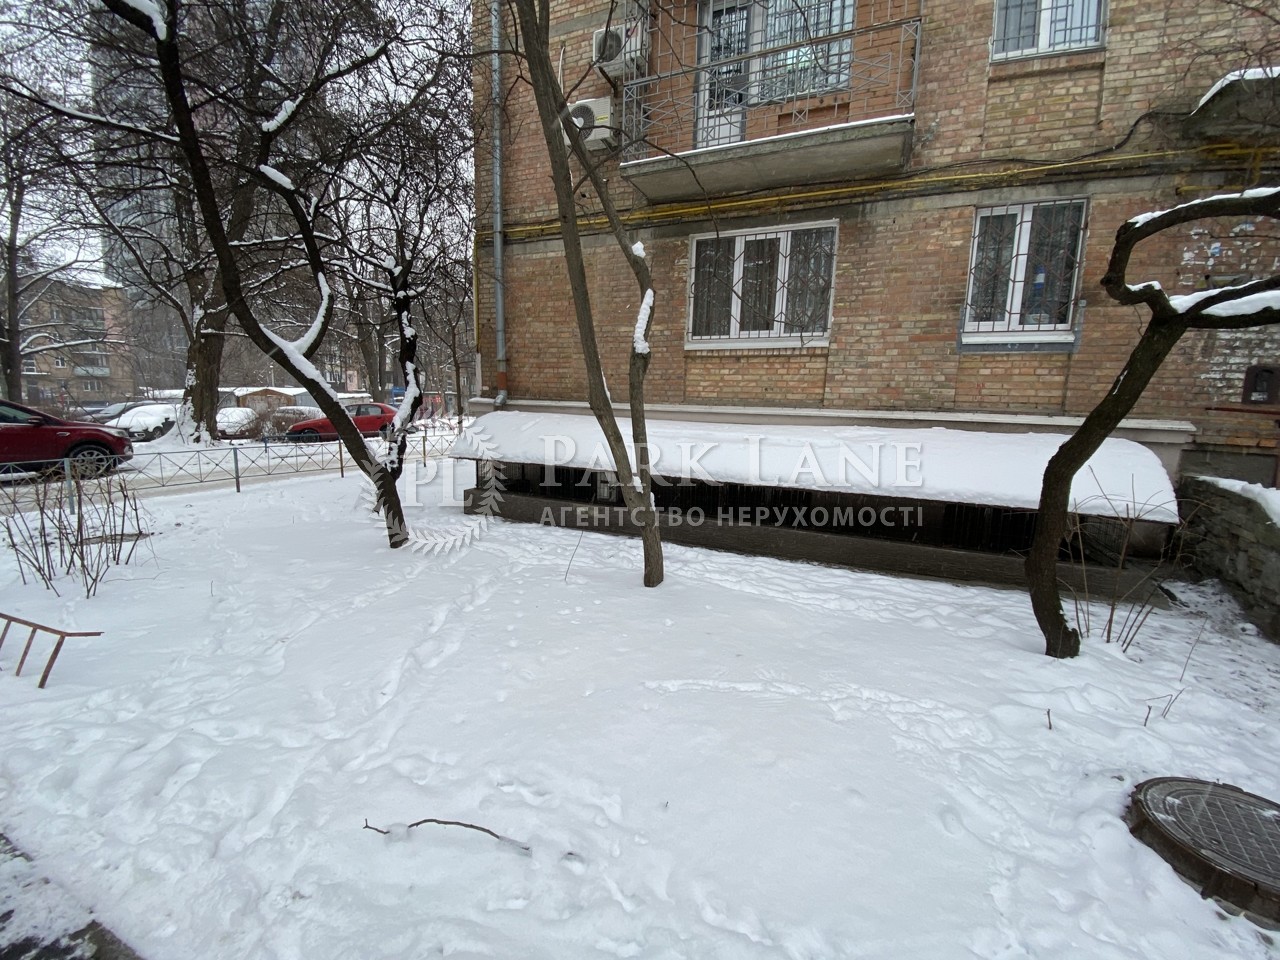  Нежилое помещение, ул. Телиги Елены, Киев, Z-832453 - Фото 7